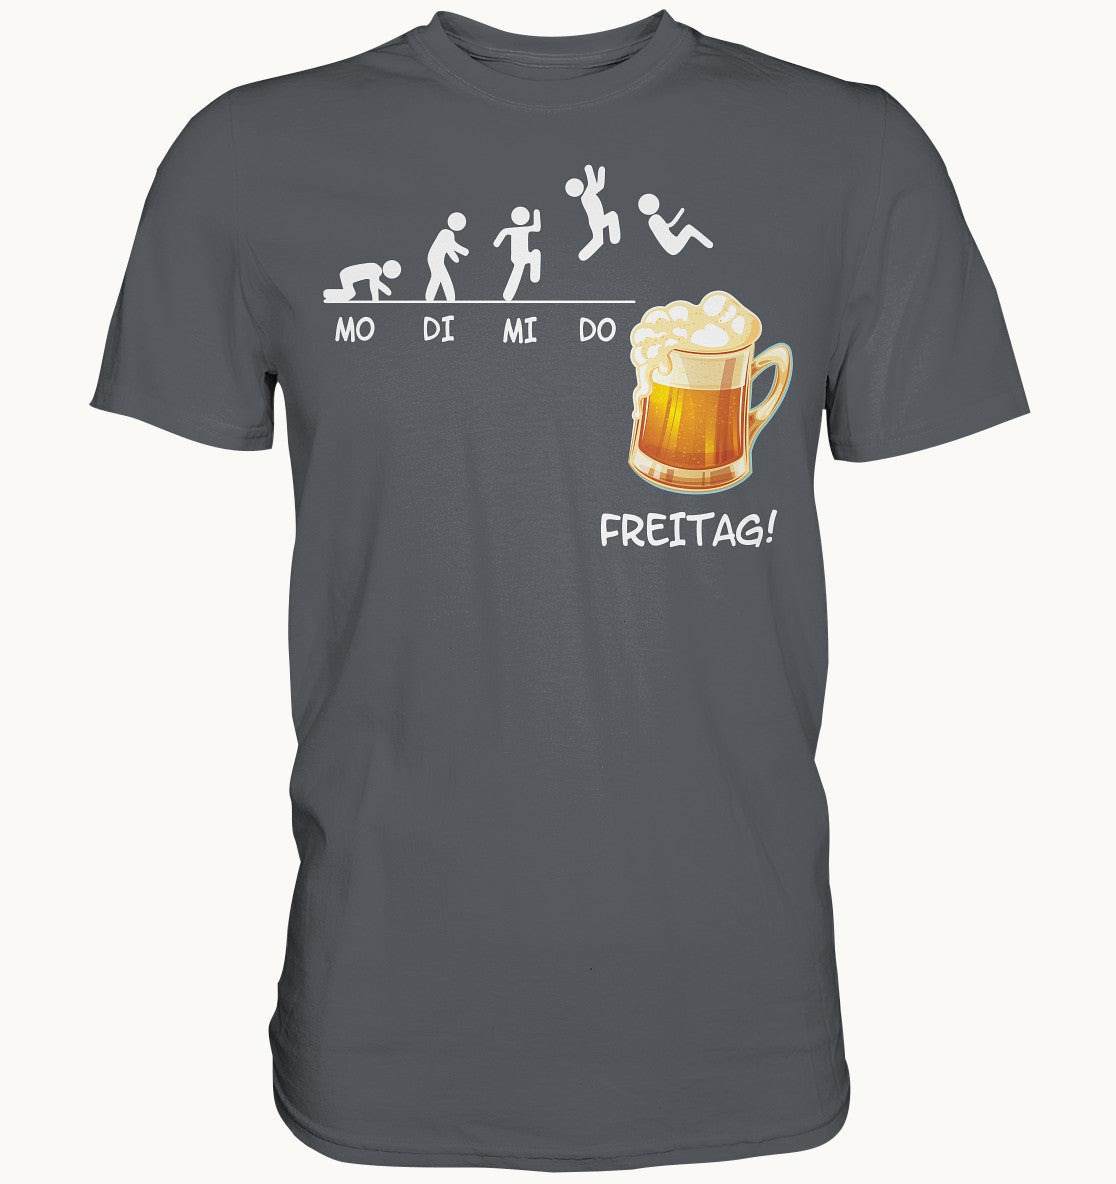 MO, DI, MI, DO, FREITAG ! - Premium Shirt